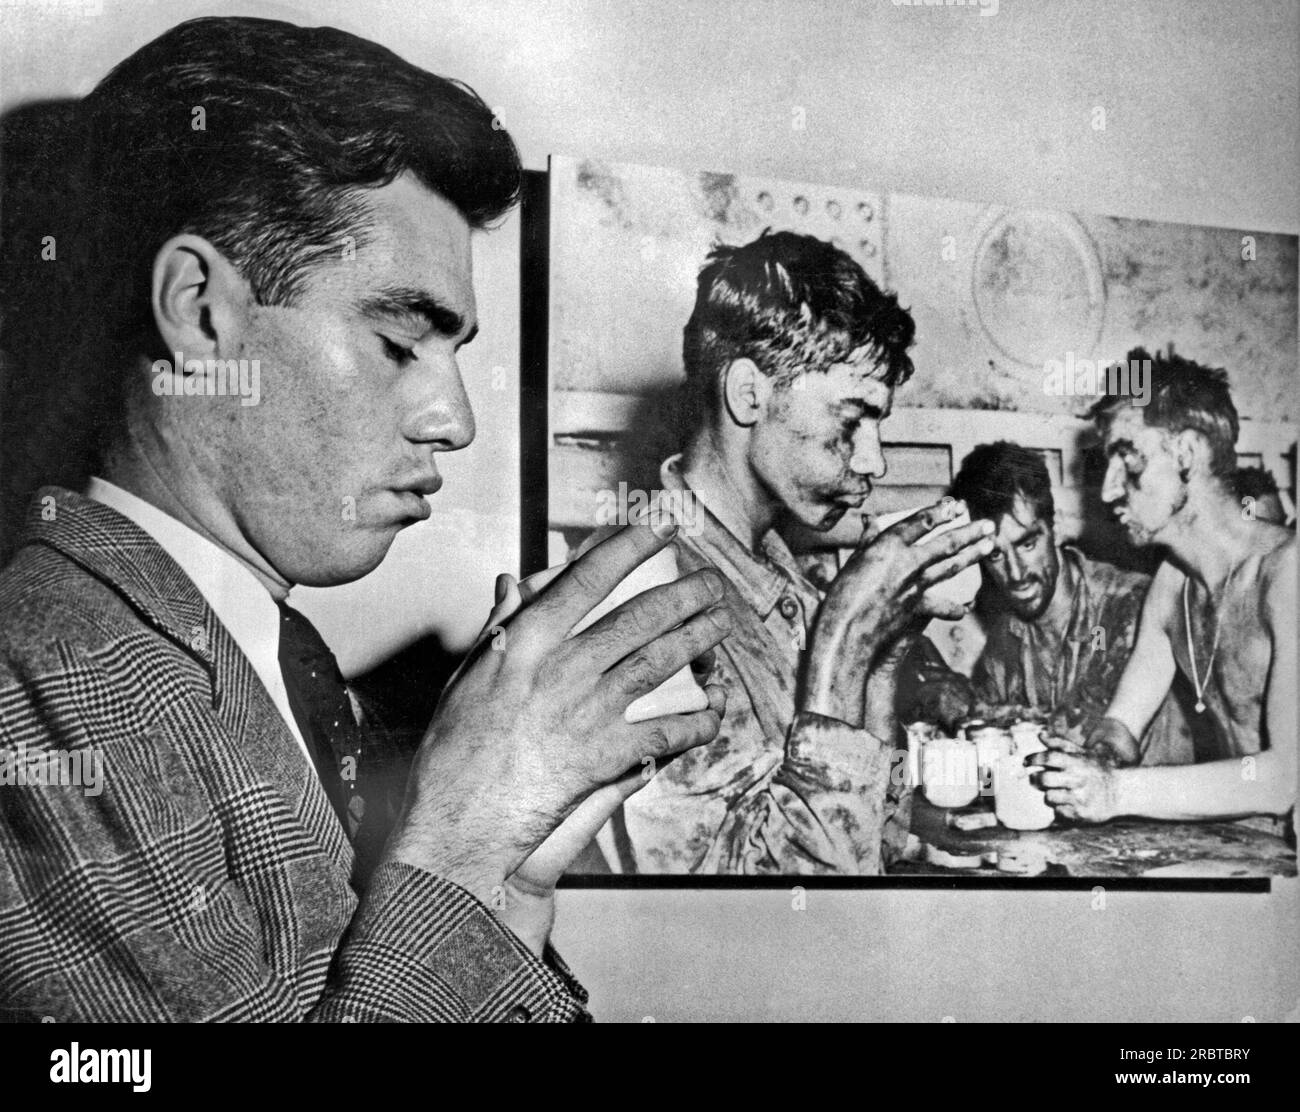 Washington, DC : Mars, 1946 récemment libéré Marine Faris Touhy frappe une pose similaire à l'image graphique de lui buvant une tasse de café et fatigué de deux jours de combats sur l'atoll d'Eniwetok en février 1944. Banque D'Images